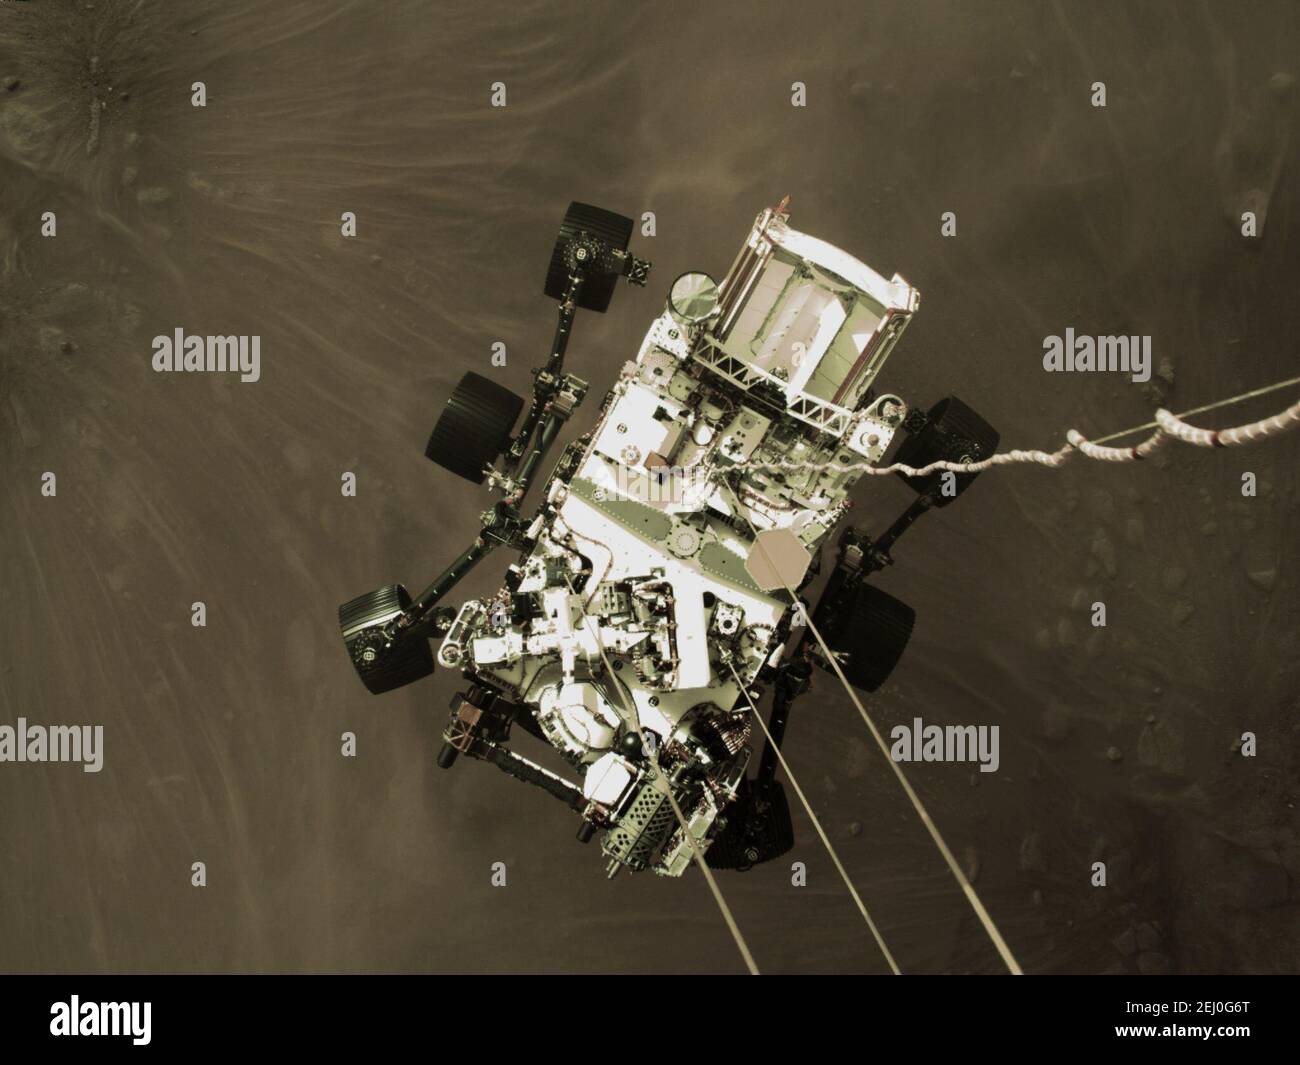 Dieses hochauflösende Standbild ist Teil eines Videos, das von mehreren Kameras aufgenommen wurde, als der Ausdauer-Rover der NASA am 18. Februar 2021 auf dem Mars auftaste. Eine Kamera an Bord der Talfahrt hat diese Aufnahme aufgenommen. Ein wesentliches Ziel der Mission von Perseverance auf dem Mars ist die Astrobiologie, einschließlich der Suche nach Zeichen des antiken mikrobiellen Lebens. Der Rover wird die Geologie des Planeten und das vergangene Klima charakterisieren, den Weg für die menschliche Erkundung des Roten Planeten ebnen und die erste Mission sein, um das Gestein und den Regolith des Mars (zerbrochenes Gestein und Staub) zu sammeln und zu vercachen. Nachfolgende NASA-Missionen, in Zusammenarbeit mit der ESA (der Stockfoto